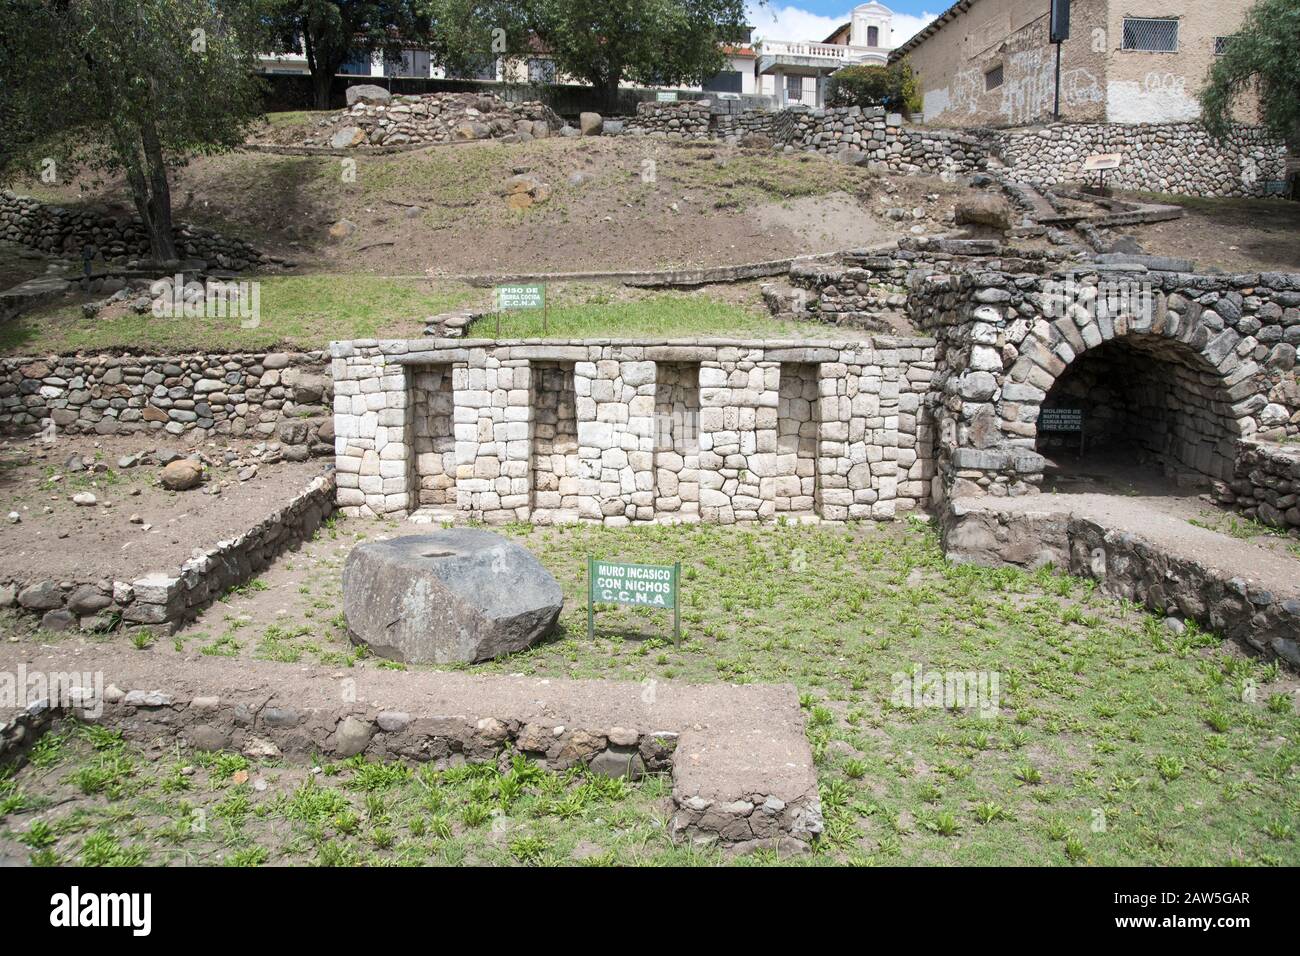 Eine Reihe von vier Incan Nischen, die unter den Ruinen von Colonial und Cañari stehen, sind ein Höhepunkt der Todos Santos Archäologiestelle im Stadtzentrum von Cuenca. Stockfoto